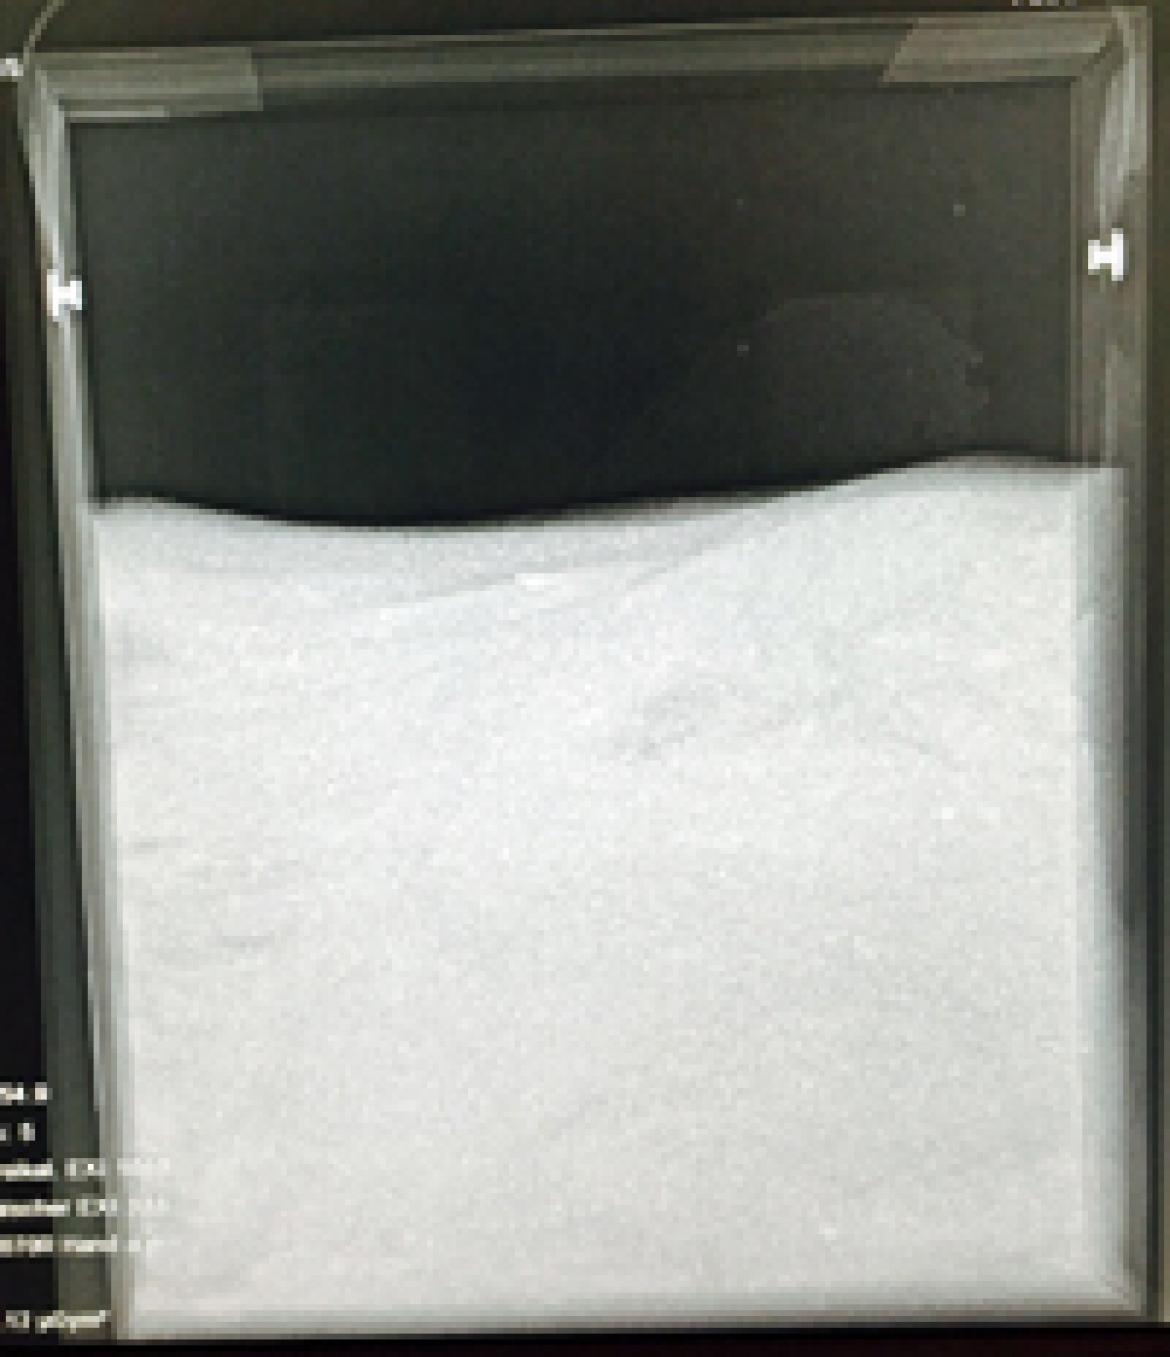 Luftpackung: Röntgenaufnahme eines Waschmittels